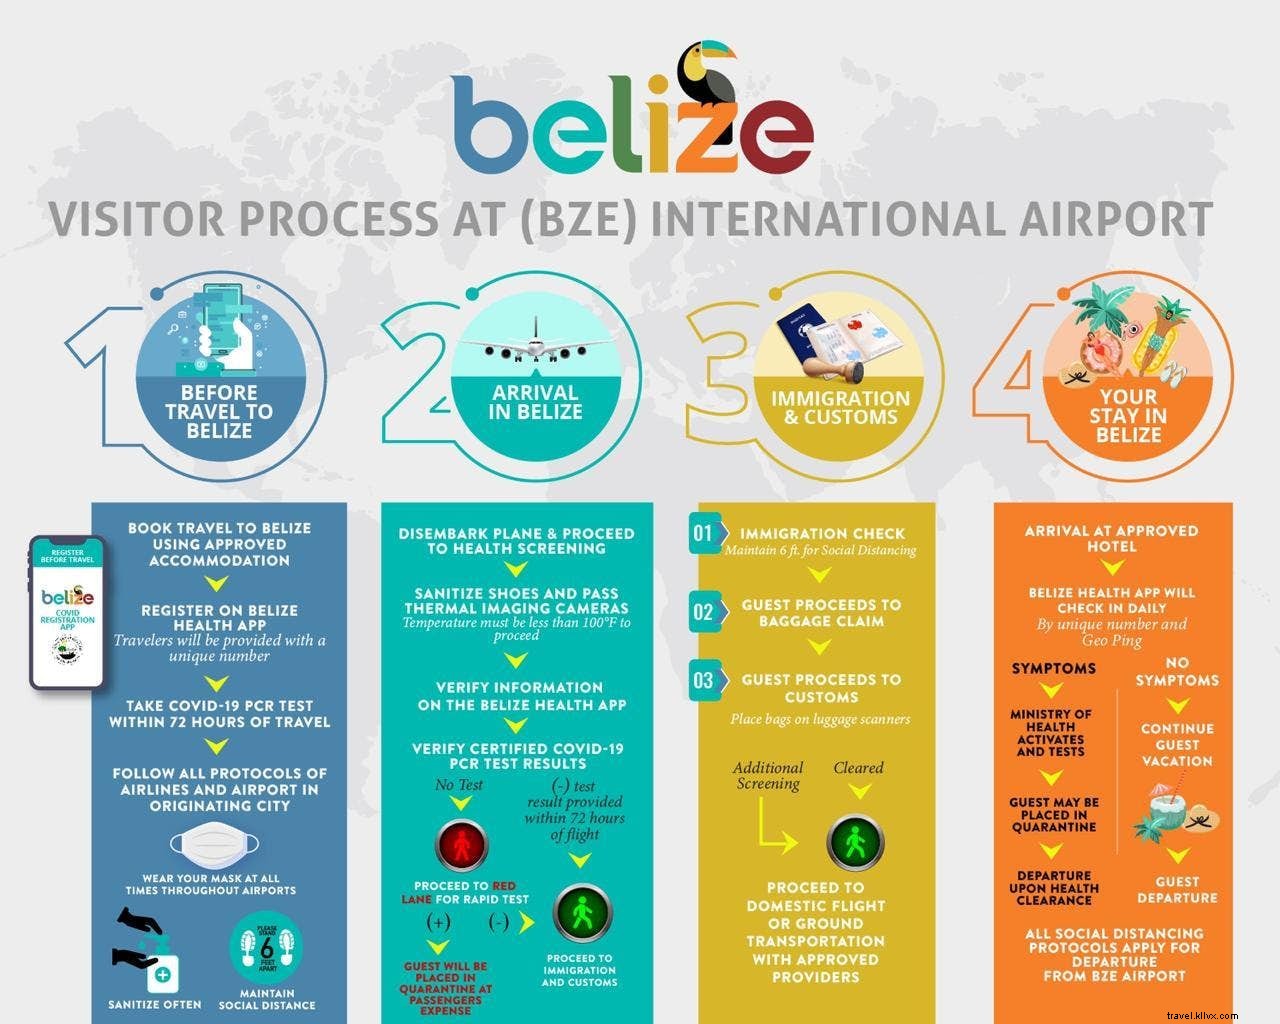 Le Belize annonce une date de réouverture 